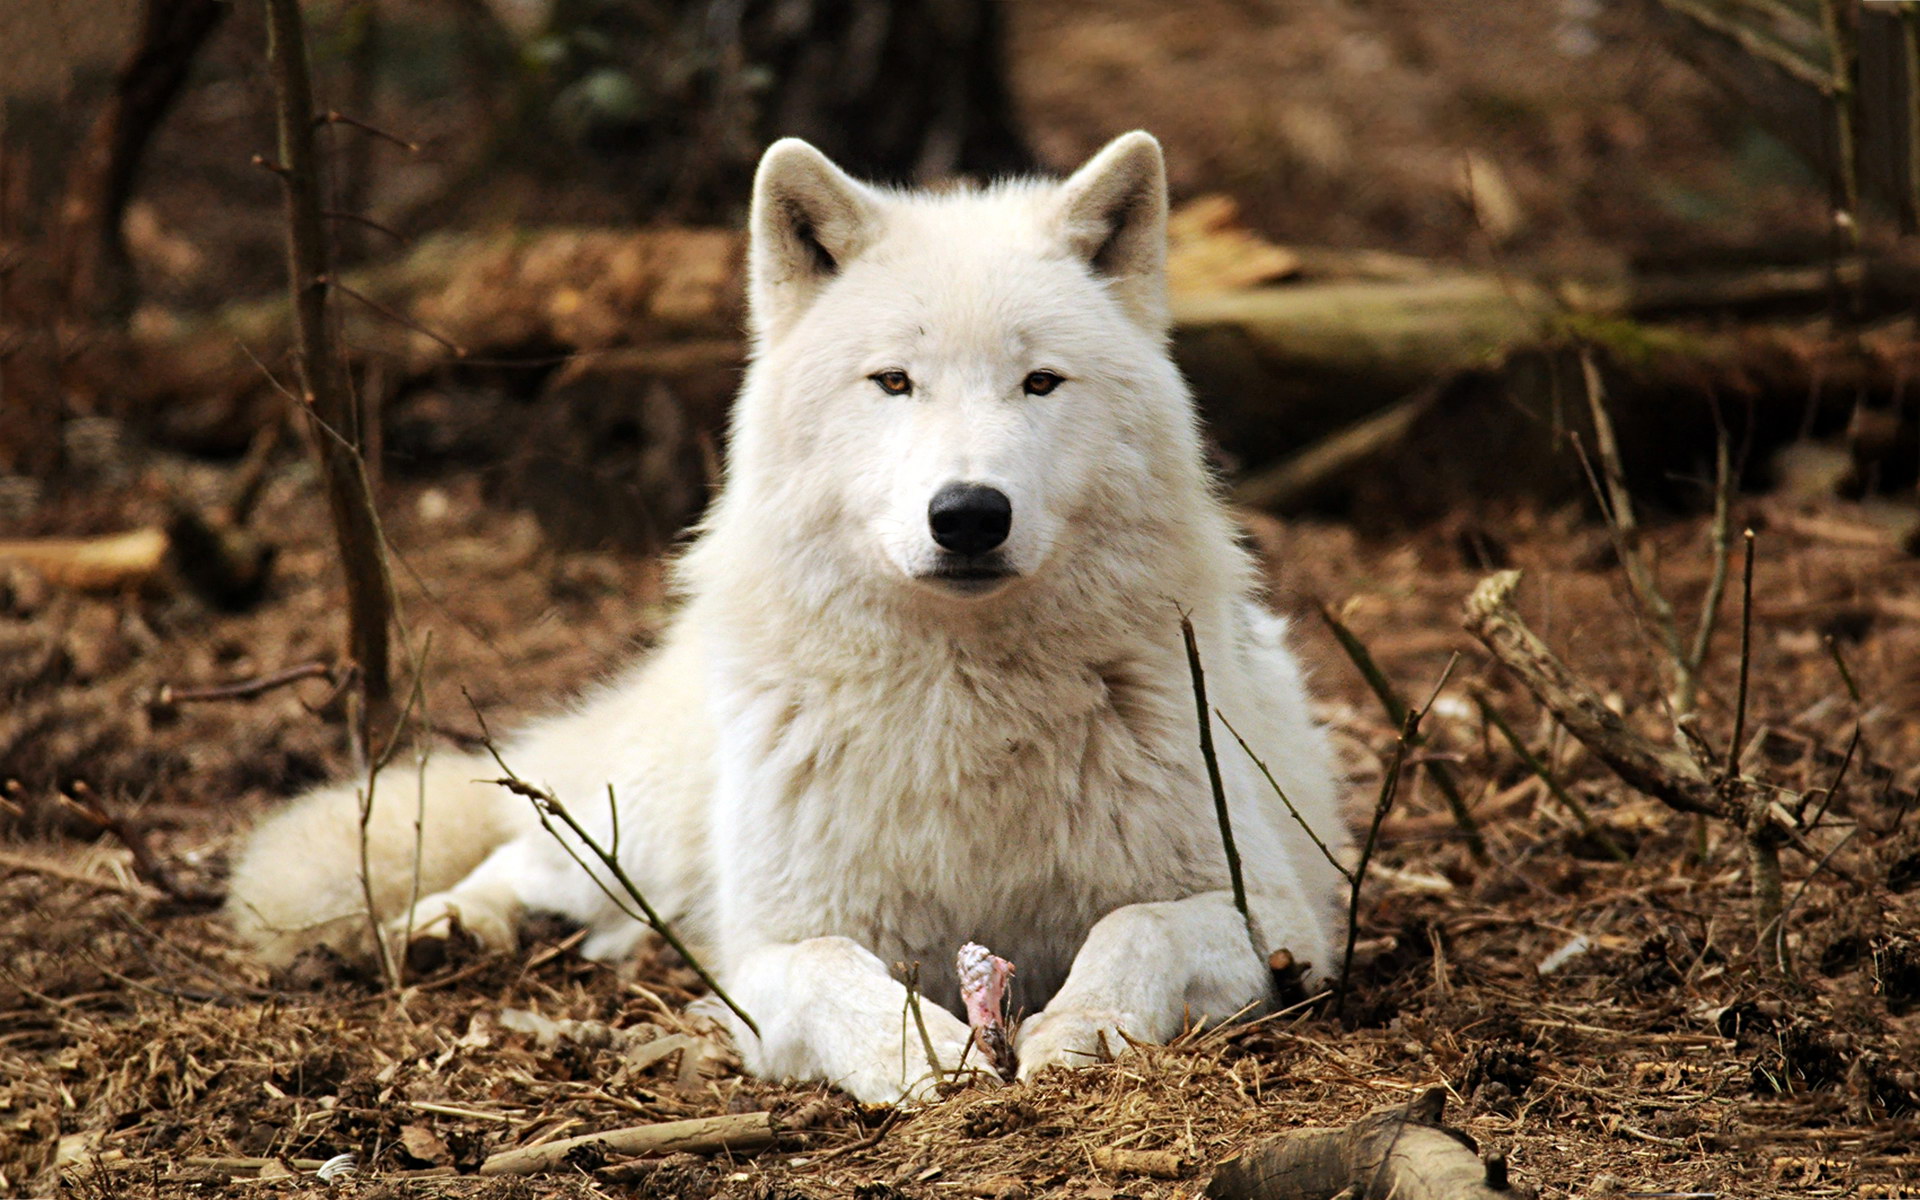 Lobo branco